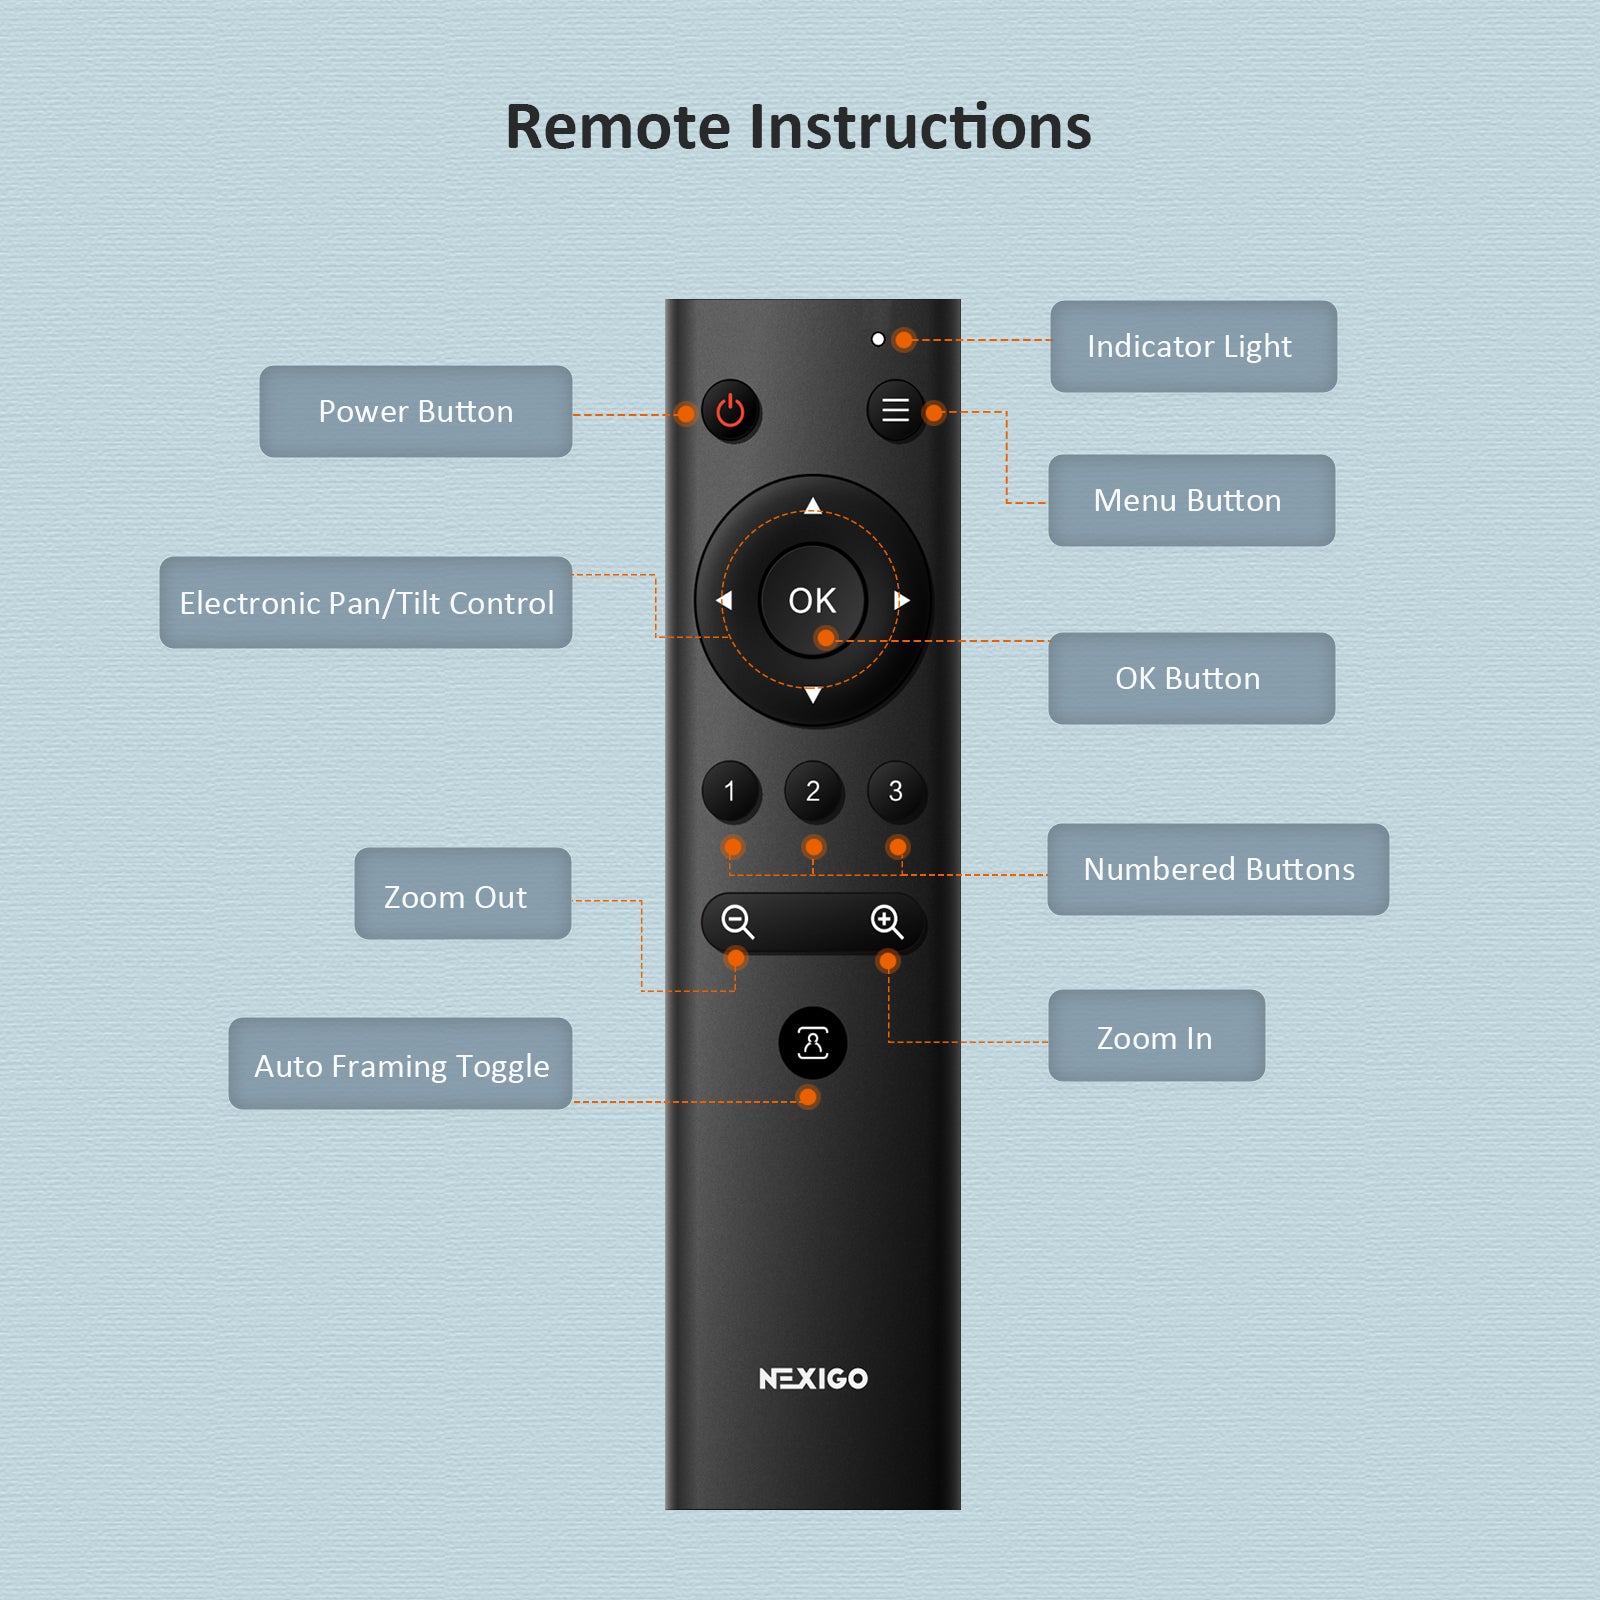 Remote control instructions, such as Power Button, Menu Button, Arrow Buttons, etc